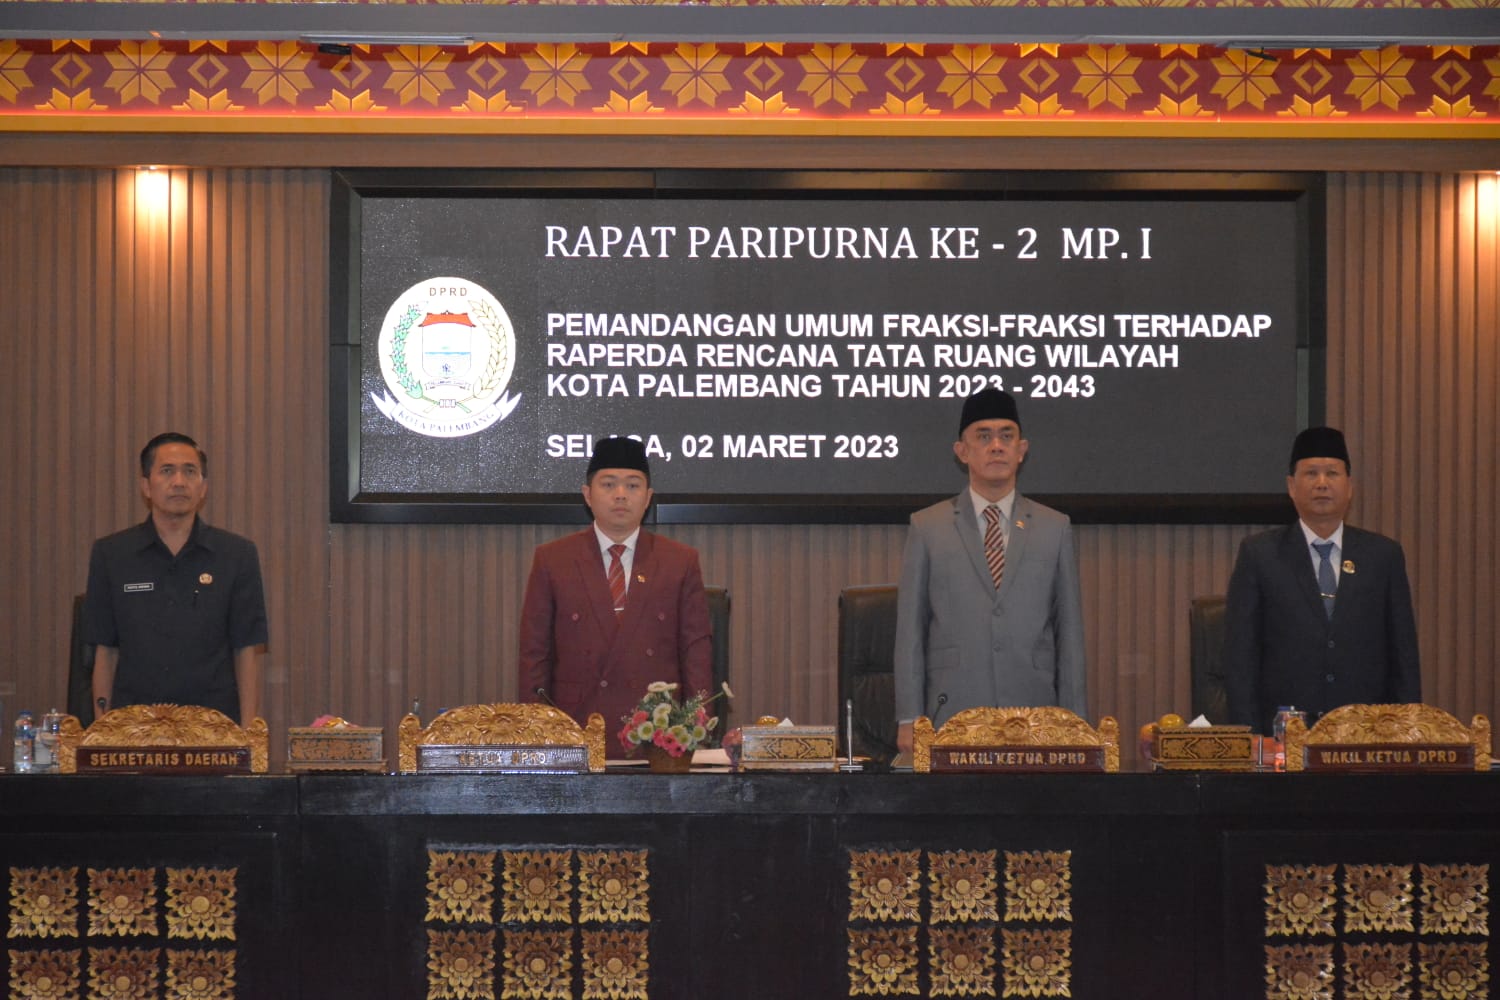 DPRD Palembang Gelar Paripurna Pemandangan Umum Fraksi-fraksi Terhadap Raperda RTRW